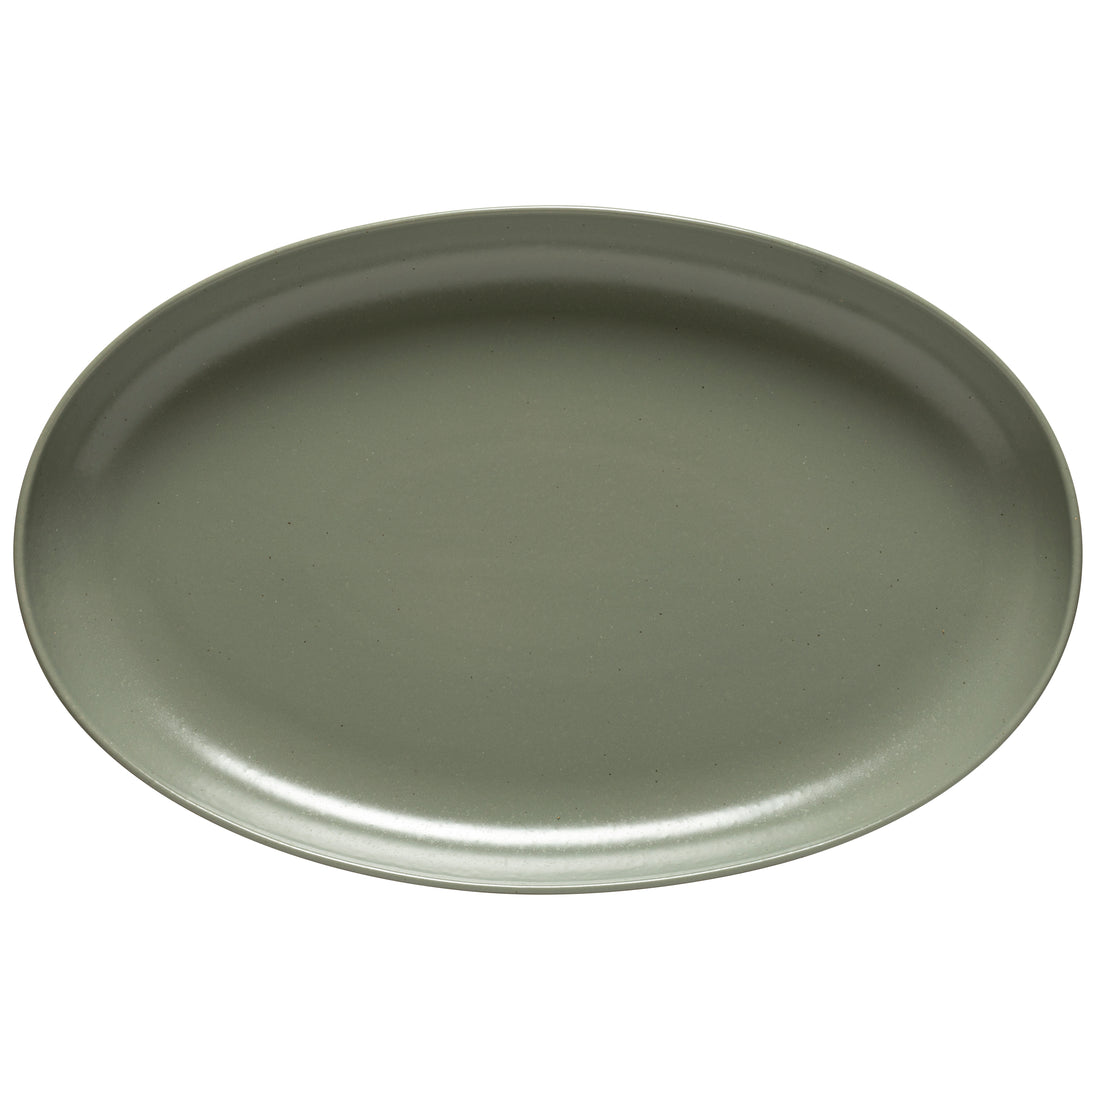 Casafina Artichoke Oval Platter